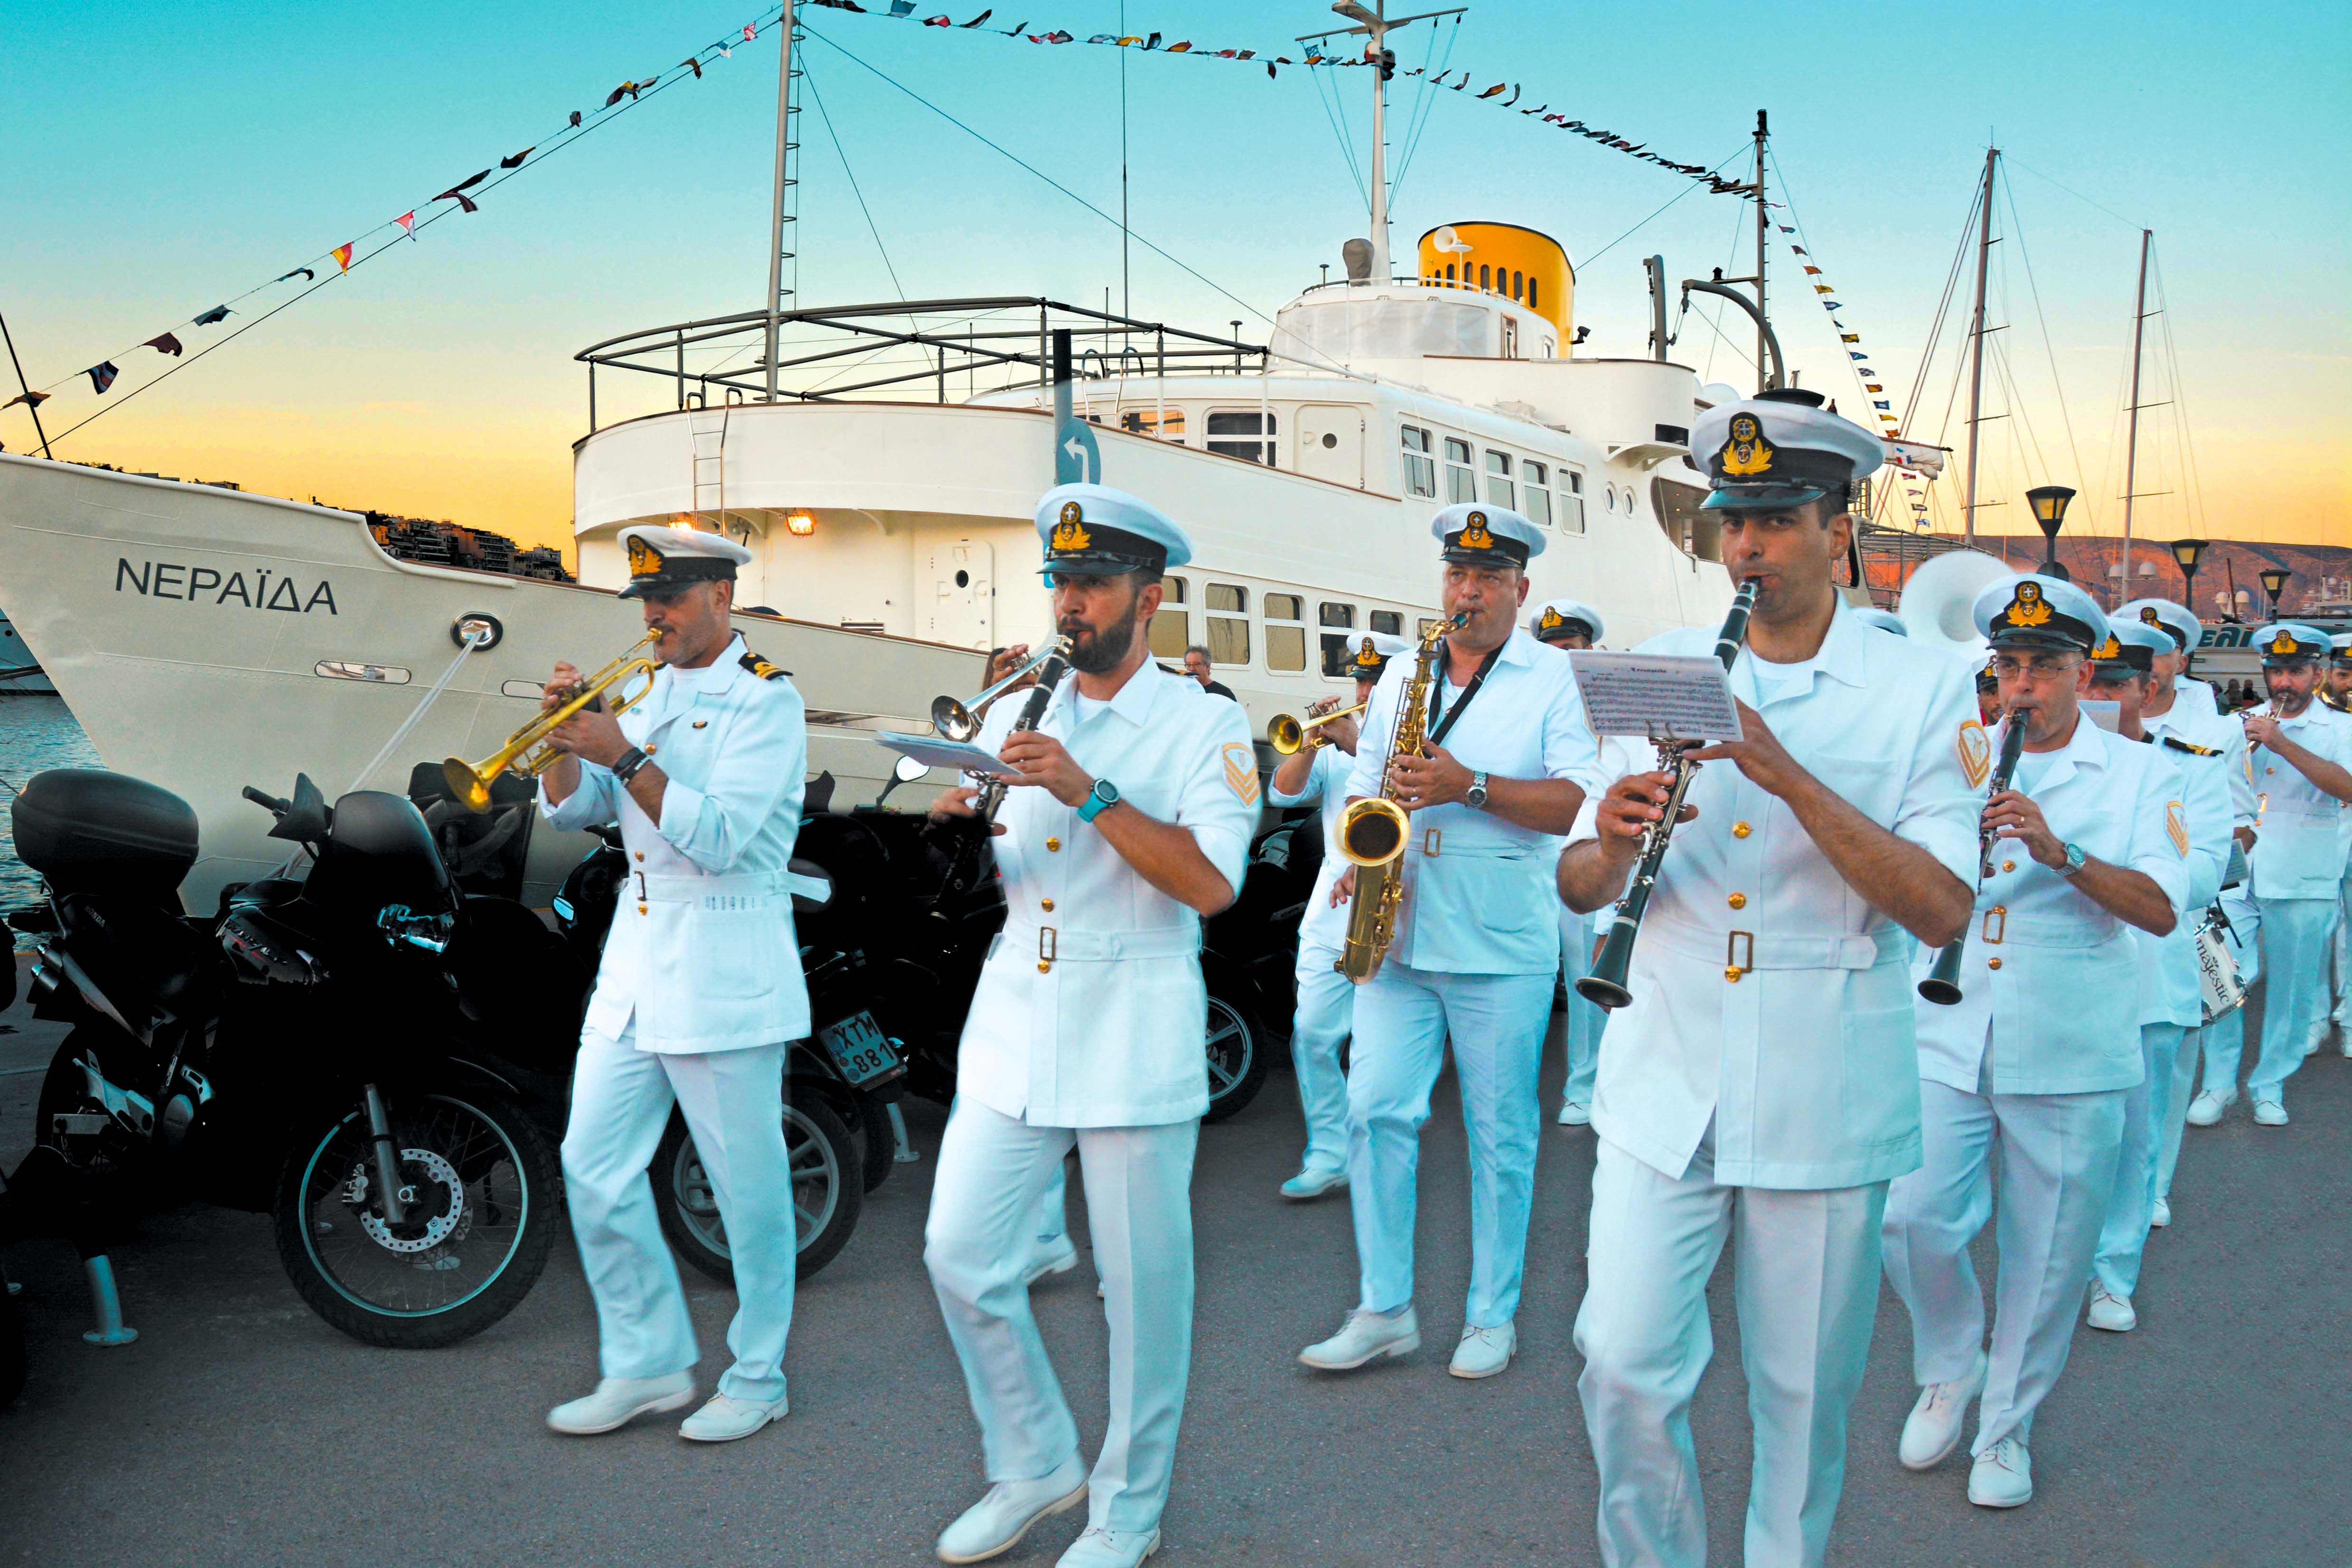 Η μπάντα του Δήμου Πειραιά μπροστά στο Πλωτό Μουσείο Νεράιδα, κατά την τελετή έναρξης των Ημερών Θάλασσας